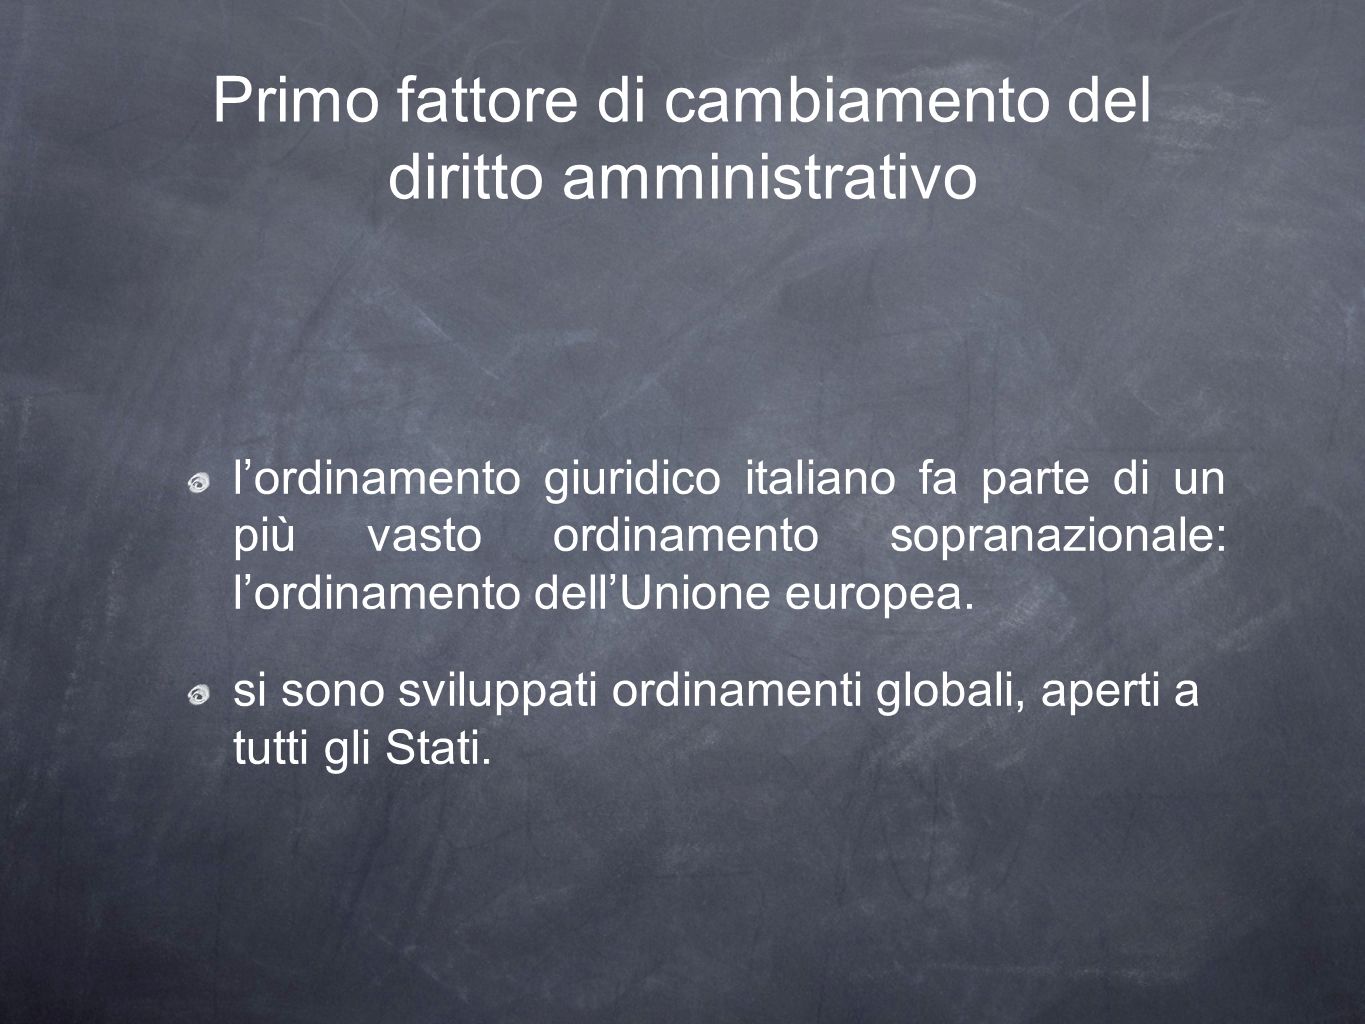 Primo fattore di cambiamento del diritto amministrativo lordinamento giuridico italiano fa parte di un più vasto ordinamento sopranazionale: lordinamento dellUnione europea.